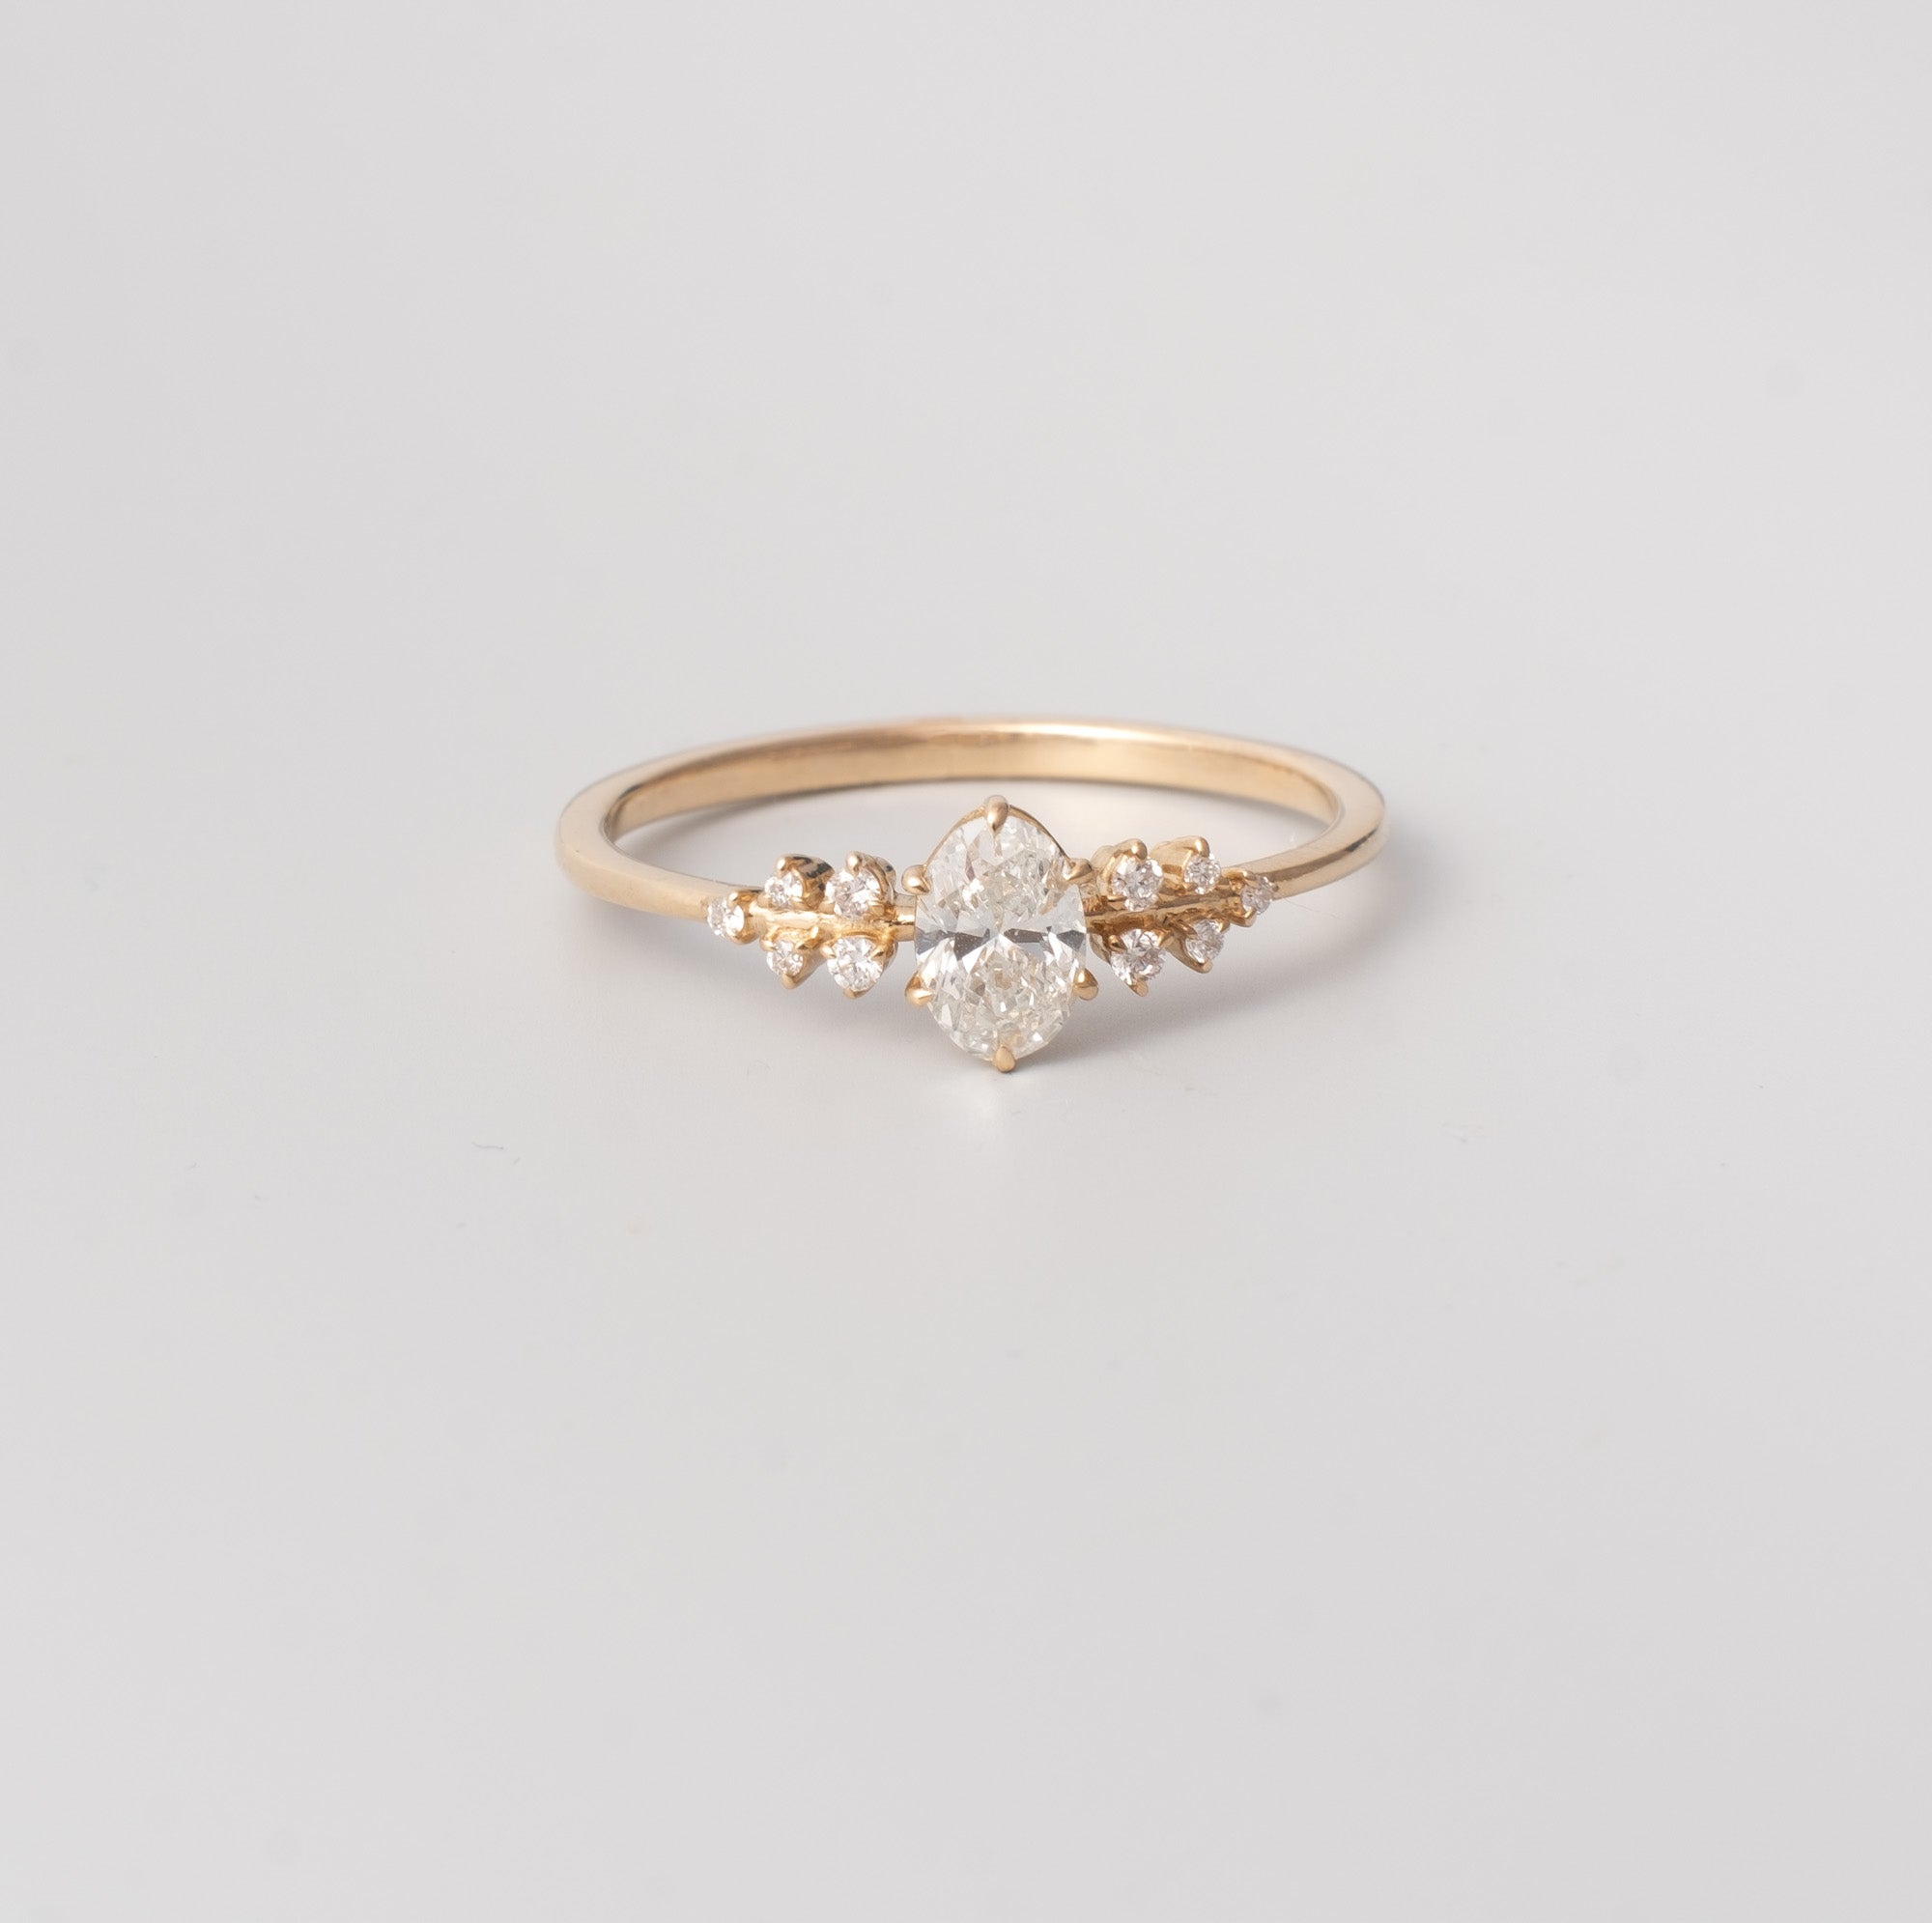 bezaubernder Verlobungsring mit 11 Diamanten 14k Echtgold glänzend